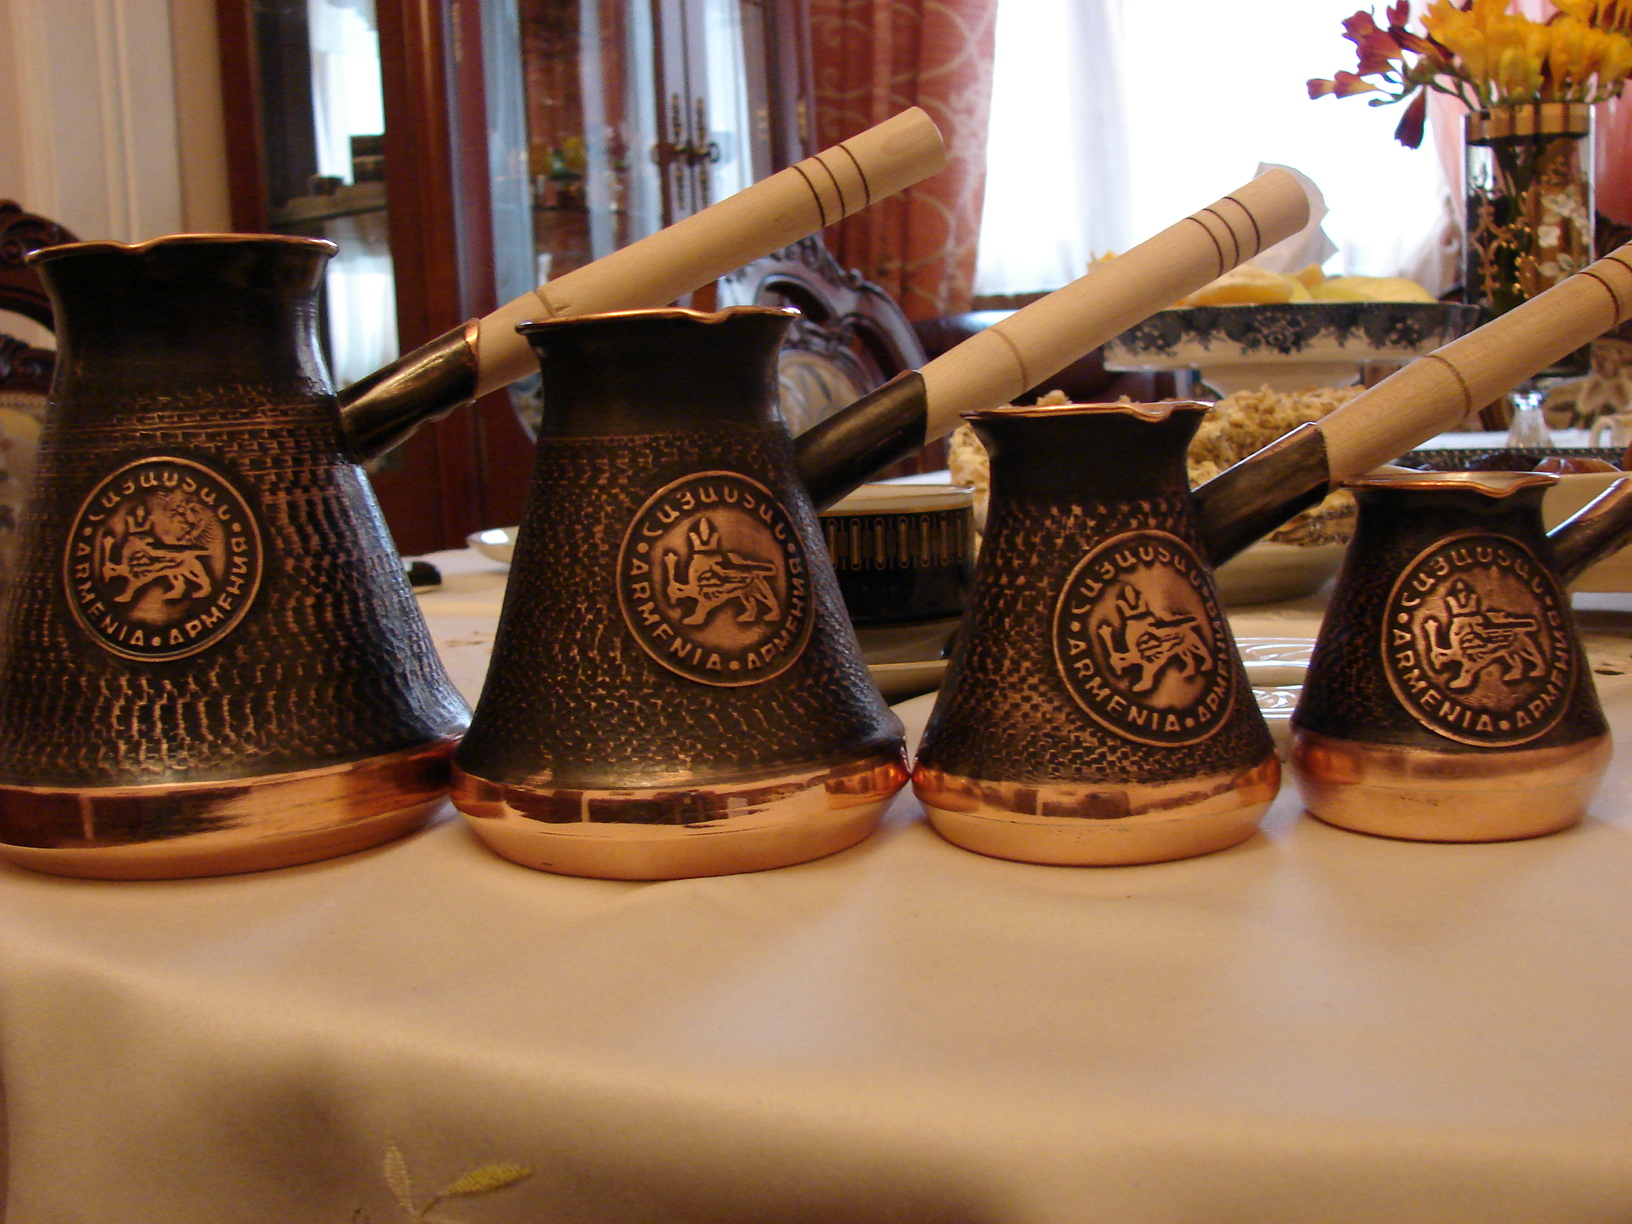 Coffee Pot 7 oz 200 ml Cezve Turkish Greek Arabic Armenian Coffee Maker Ibrik Jazva Turka Copper Pot Wooden Handel l